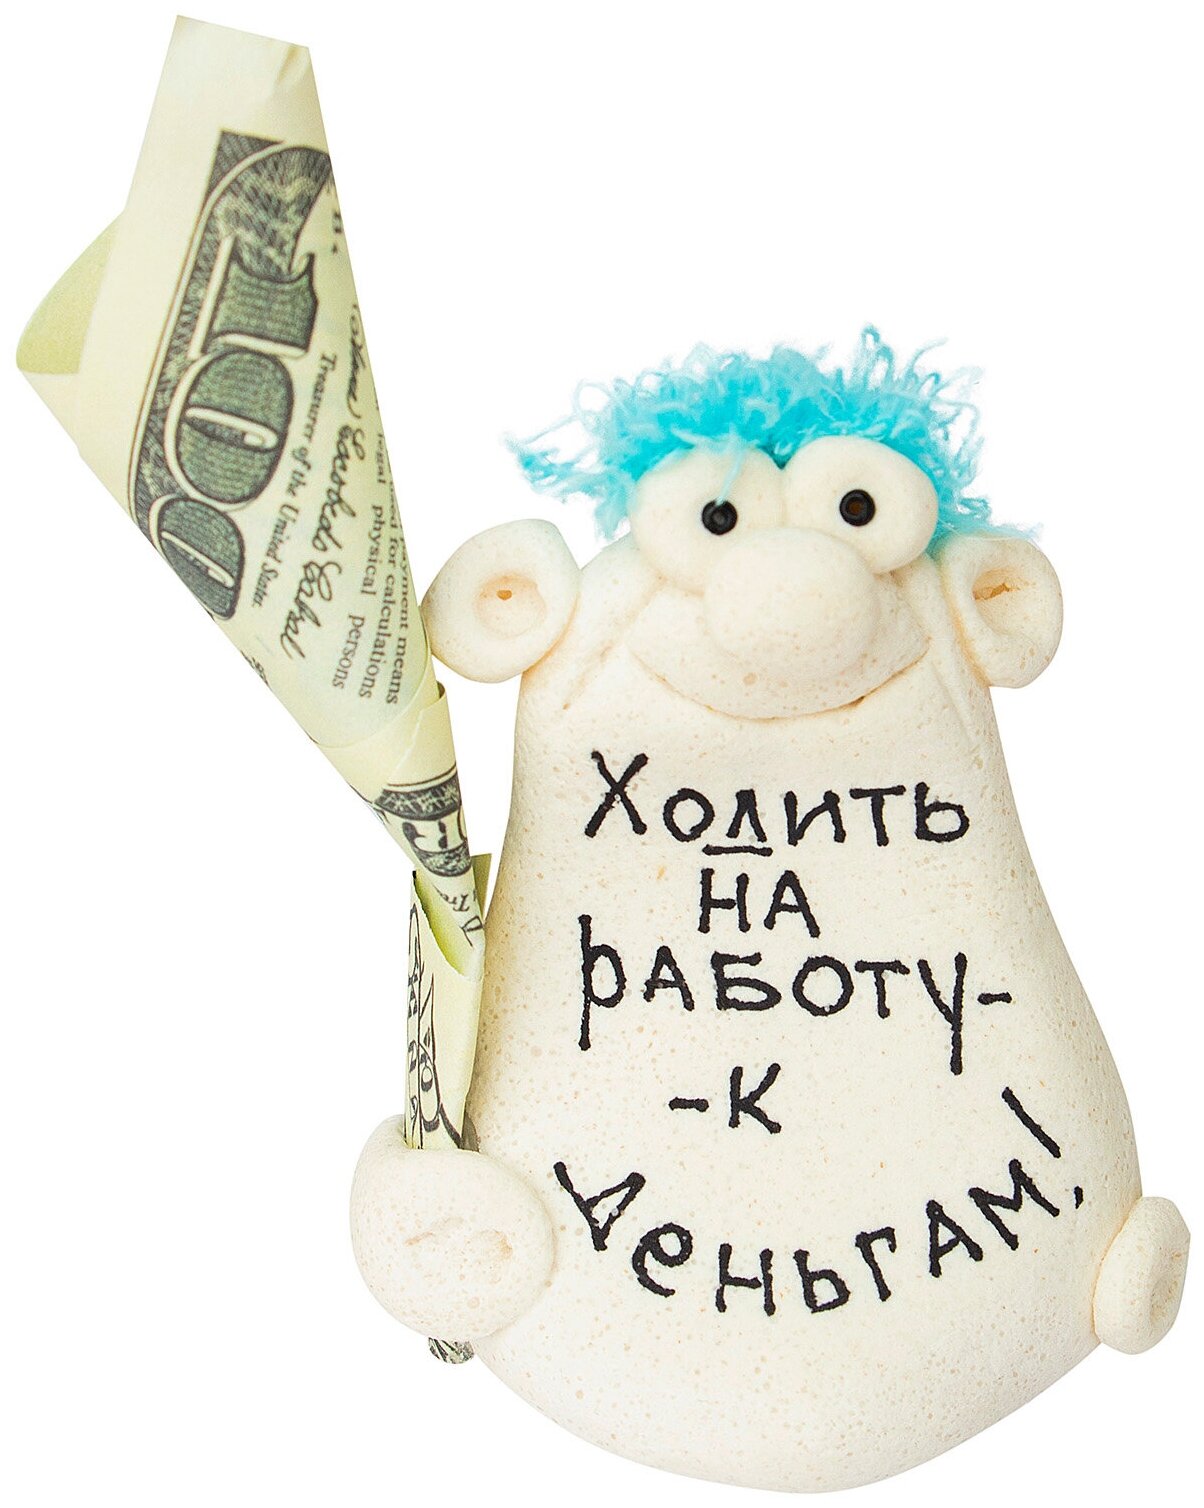 Фигурка сувенир "Ходить на работу - к деньгам" подарок мужчине, женщине, универсальный, корпоративный коллеге на 23 февраля, 8 марта